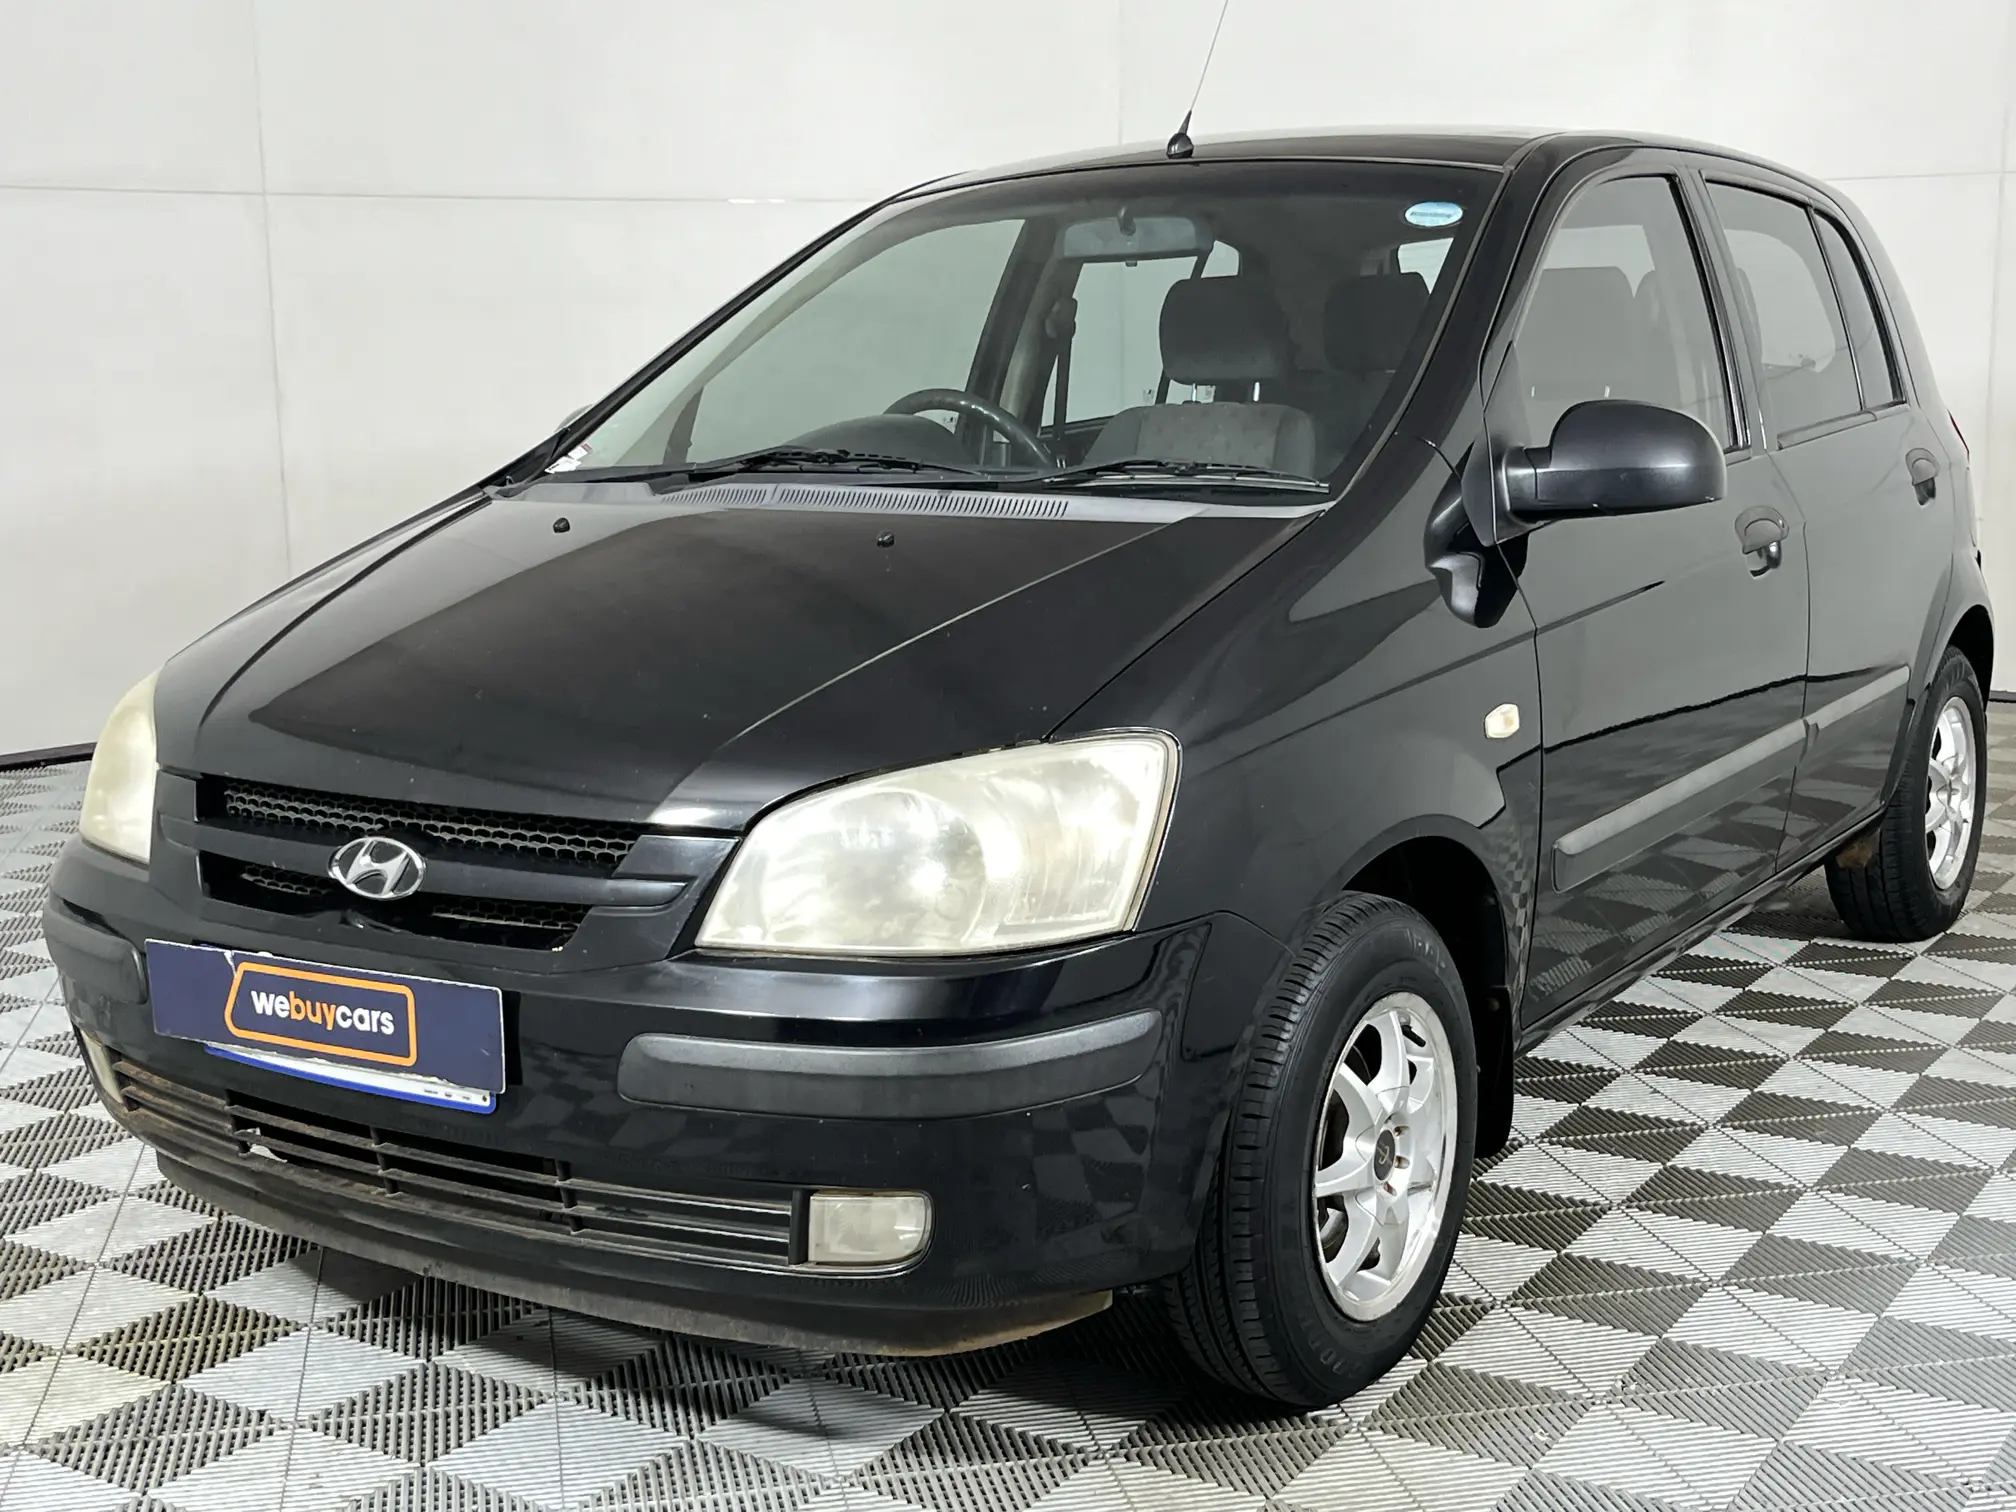 2004 Hyundai Getz 1.3 A/C